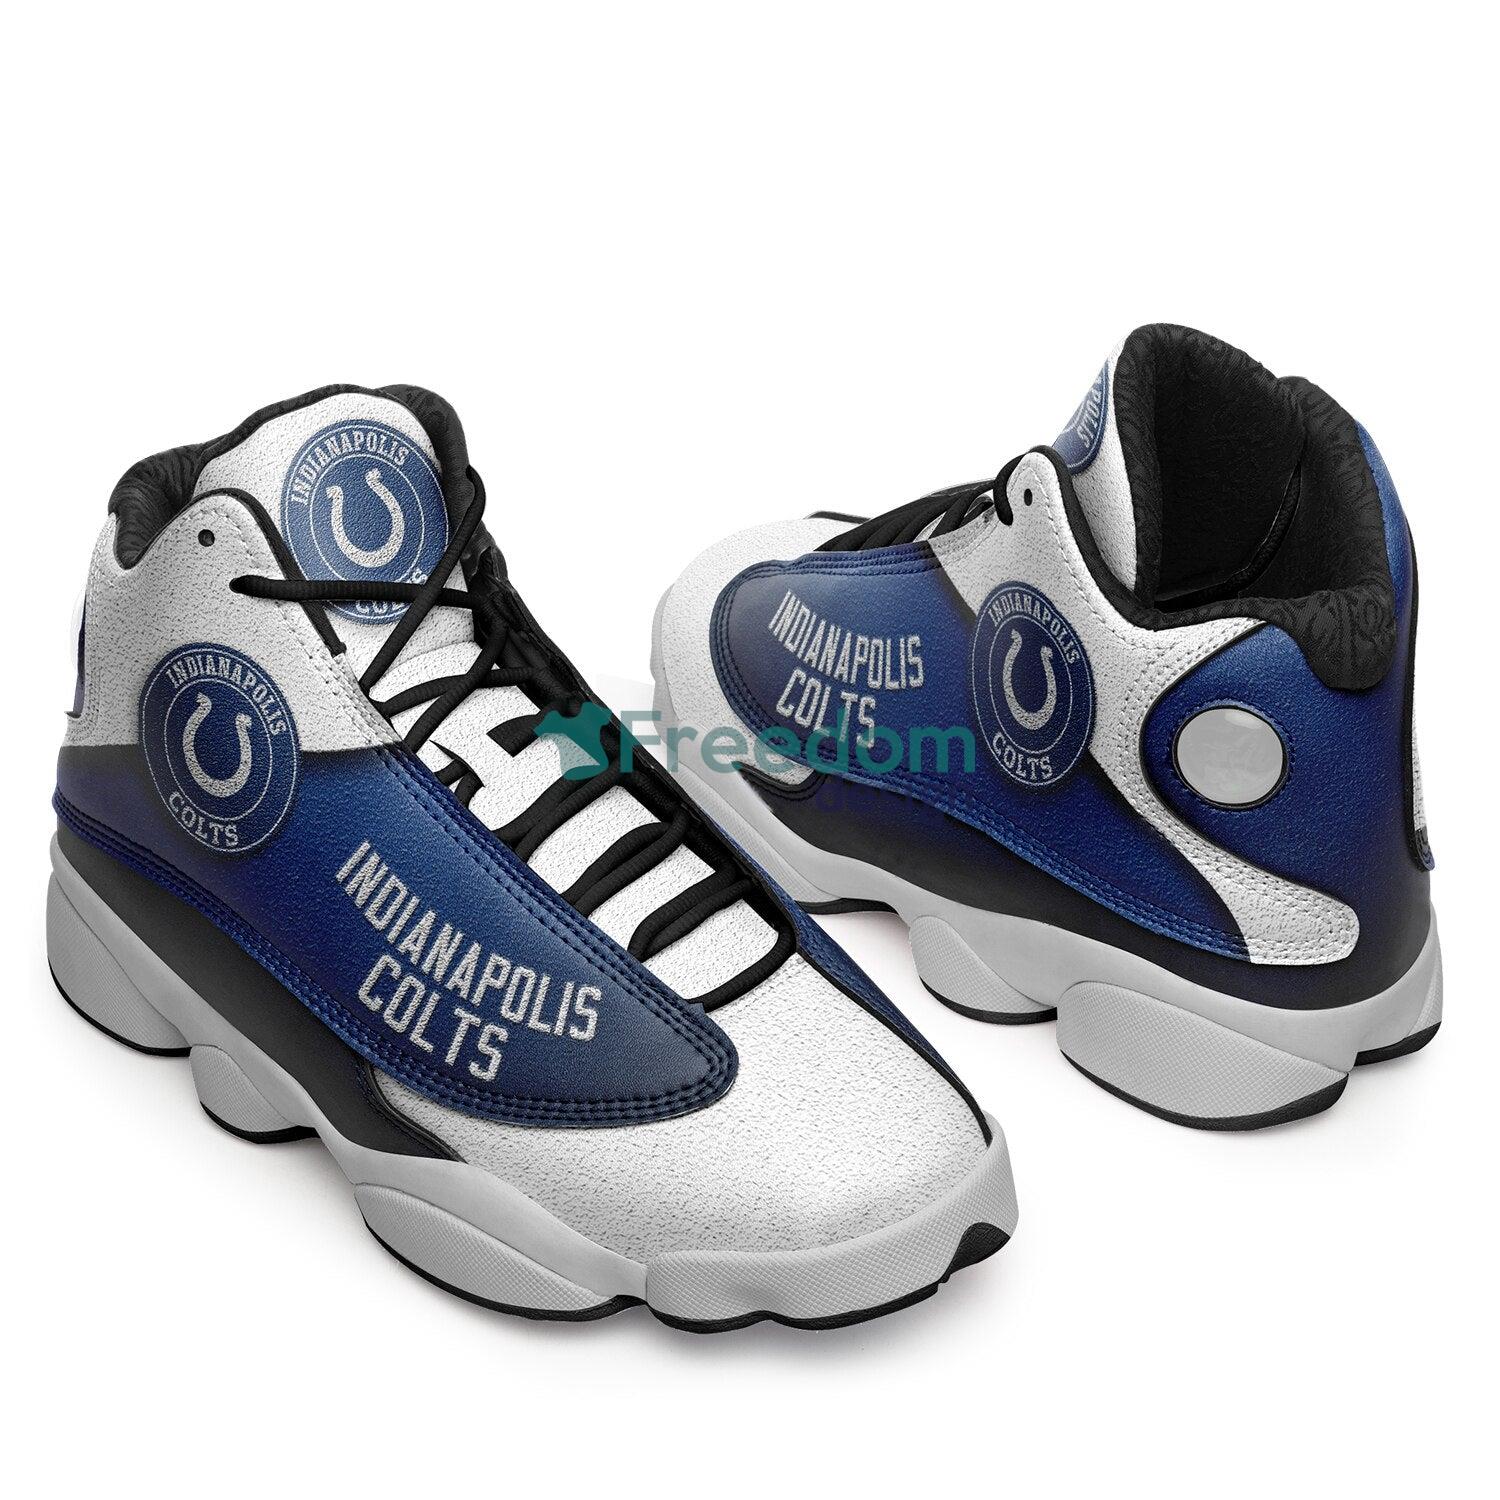 Indianapolis Colts Fans Blue Air Jordan 13 Sneaker Shoes For Fans